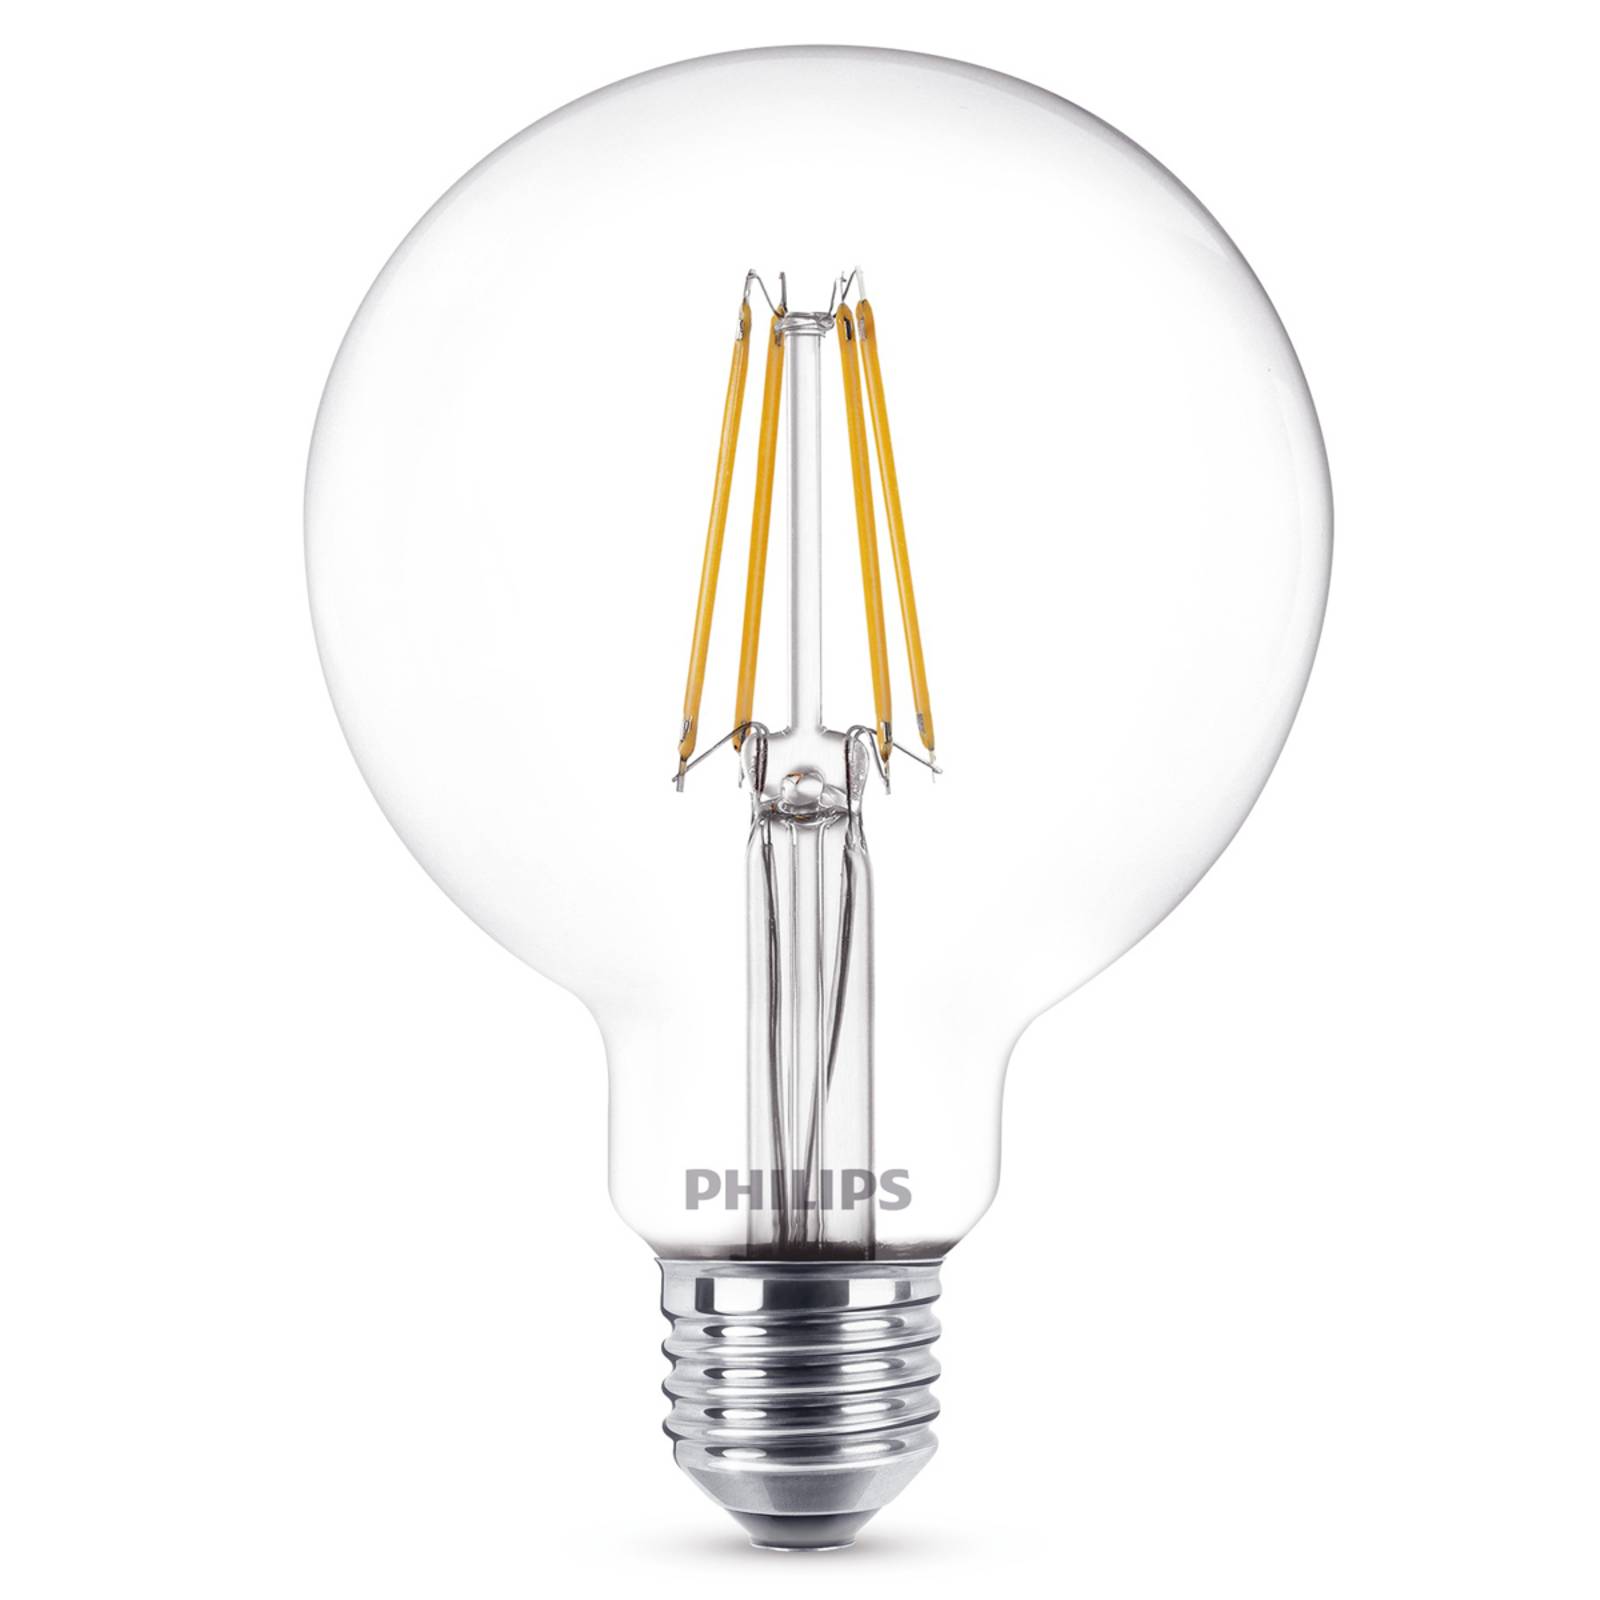 Philips LED-Globelampe E27 7W 827 G95 klar